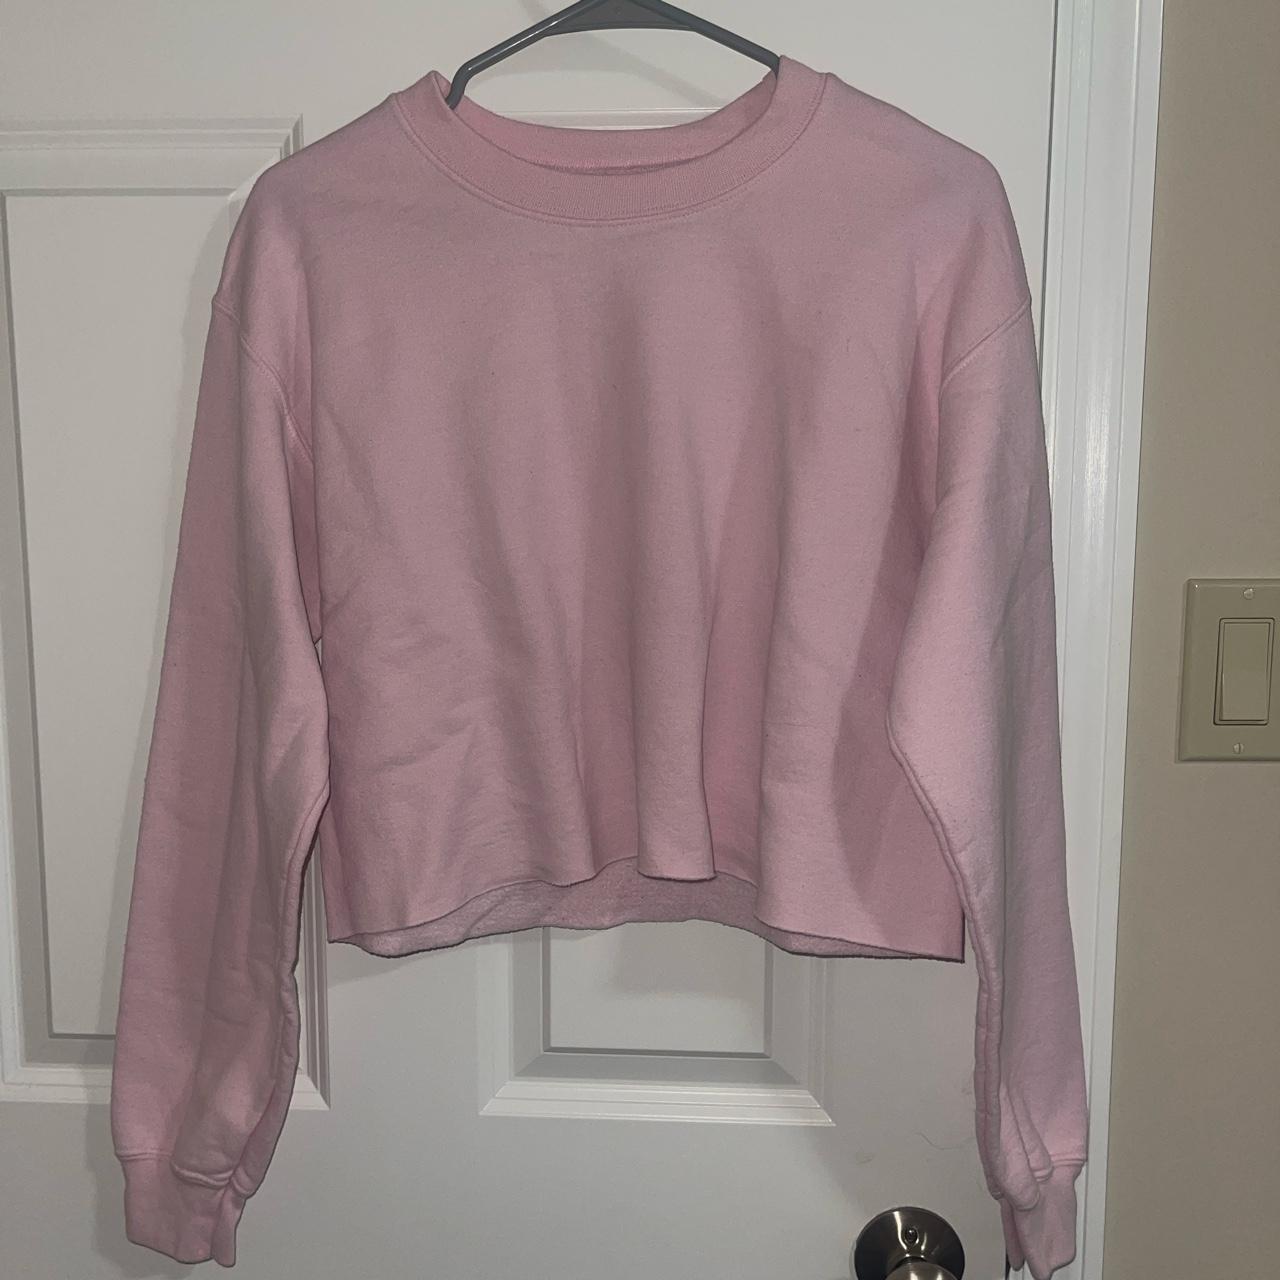 Cold Crush Women's Pink Sweatshirt